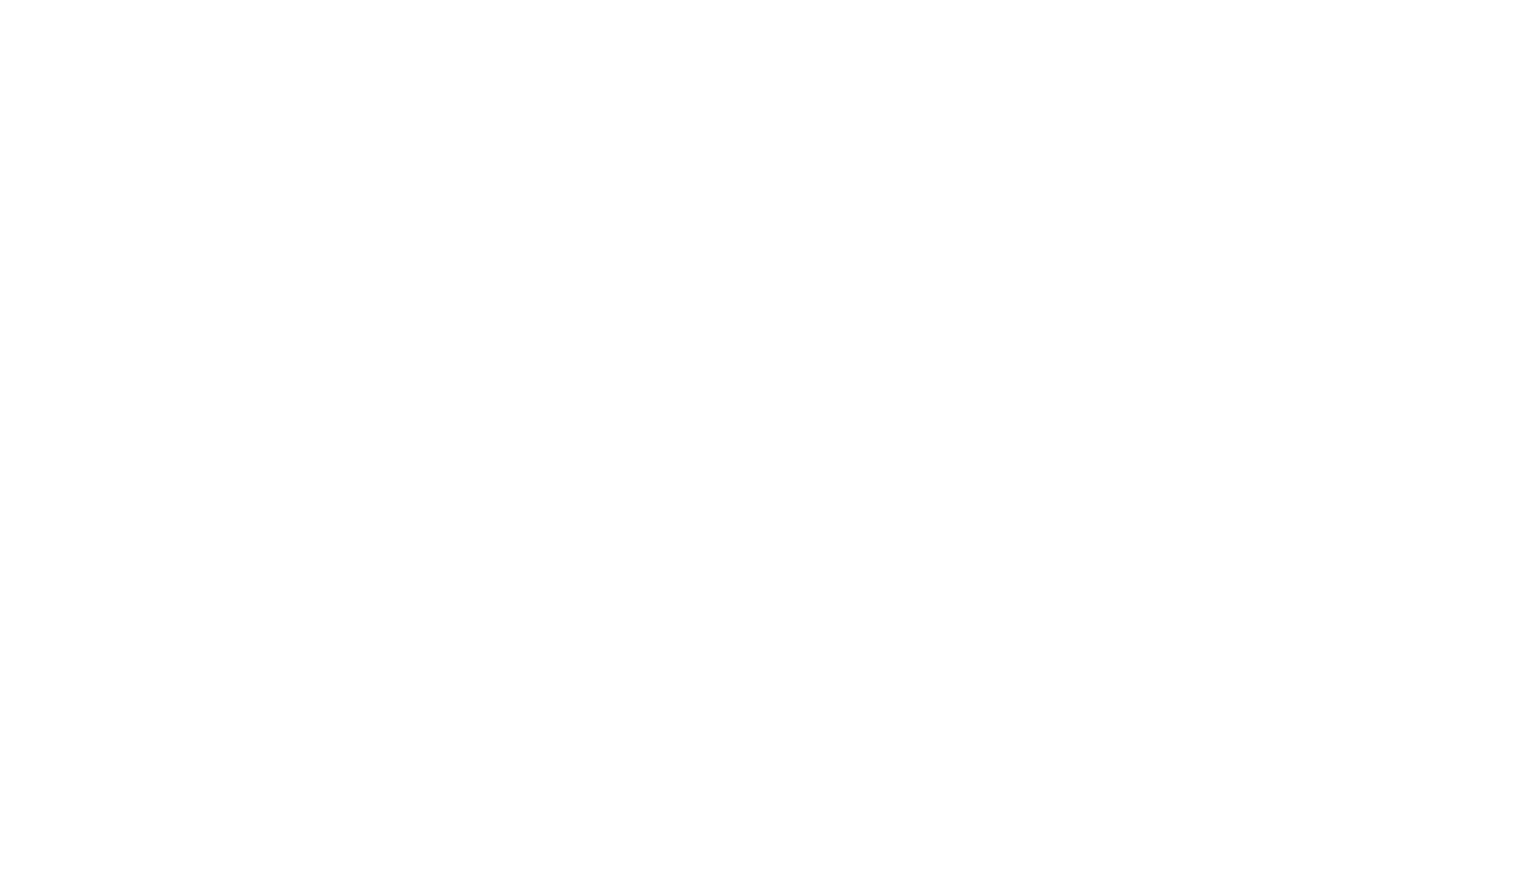 Atlantic Oceanfront Hotel - Wells Beach Maine Oceanfront Hotel